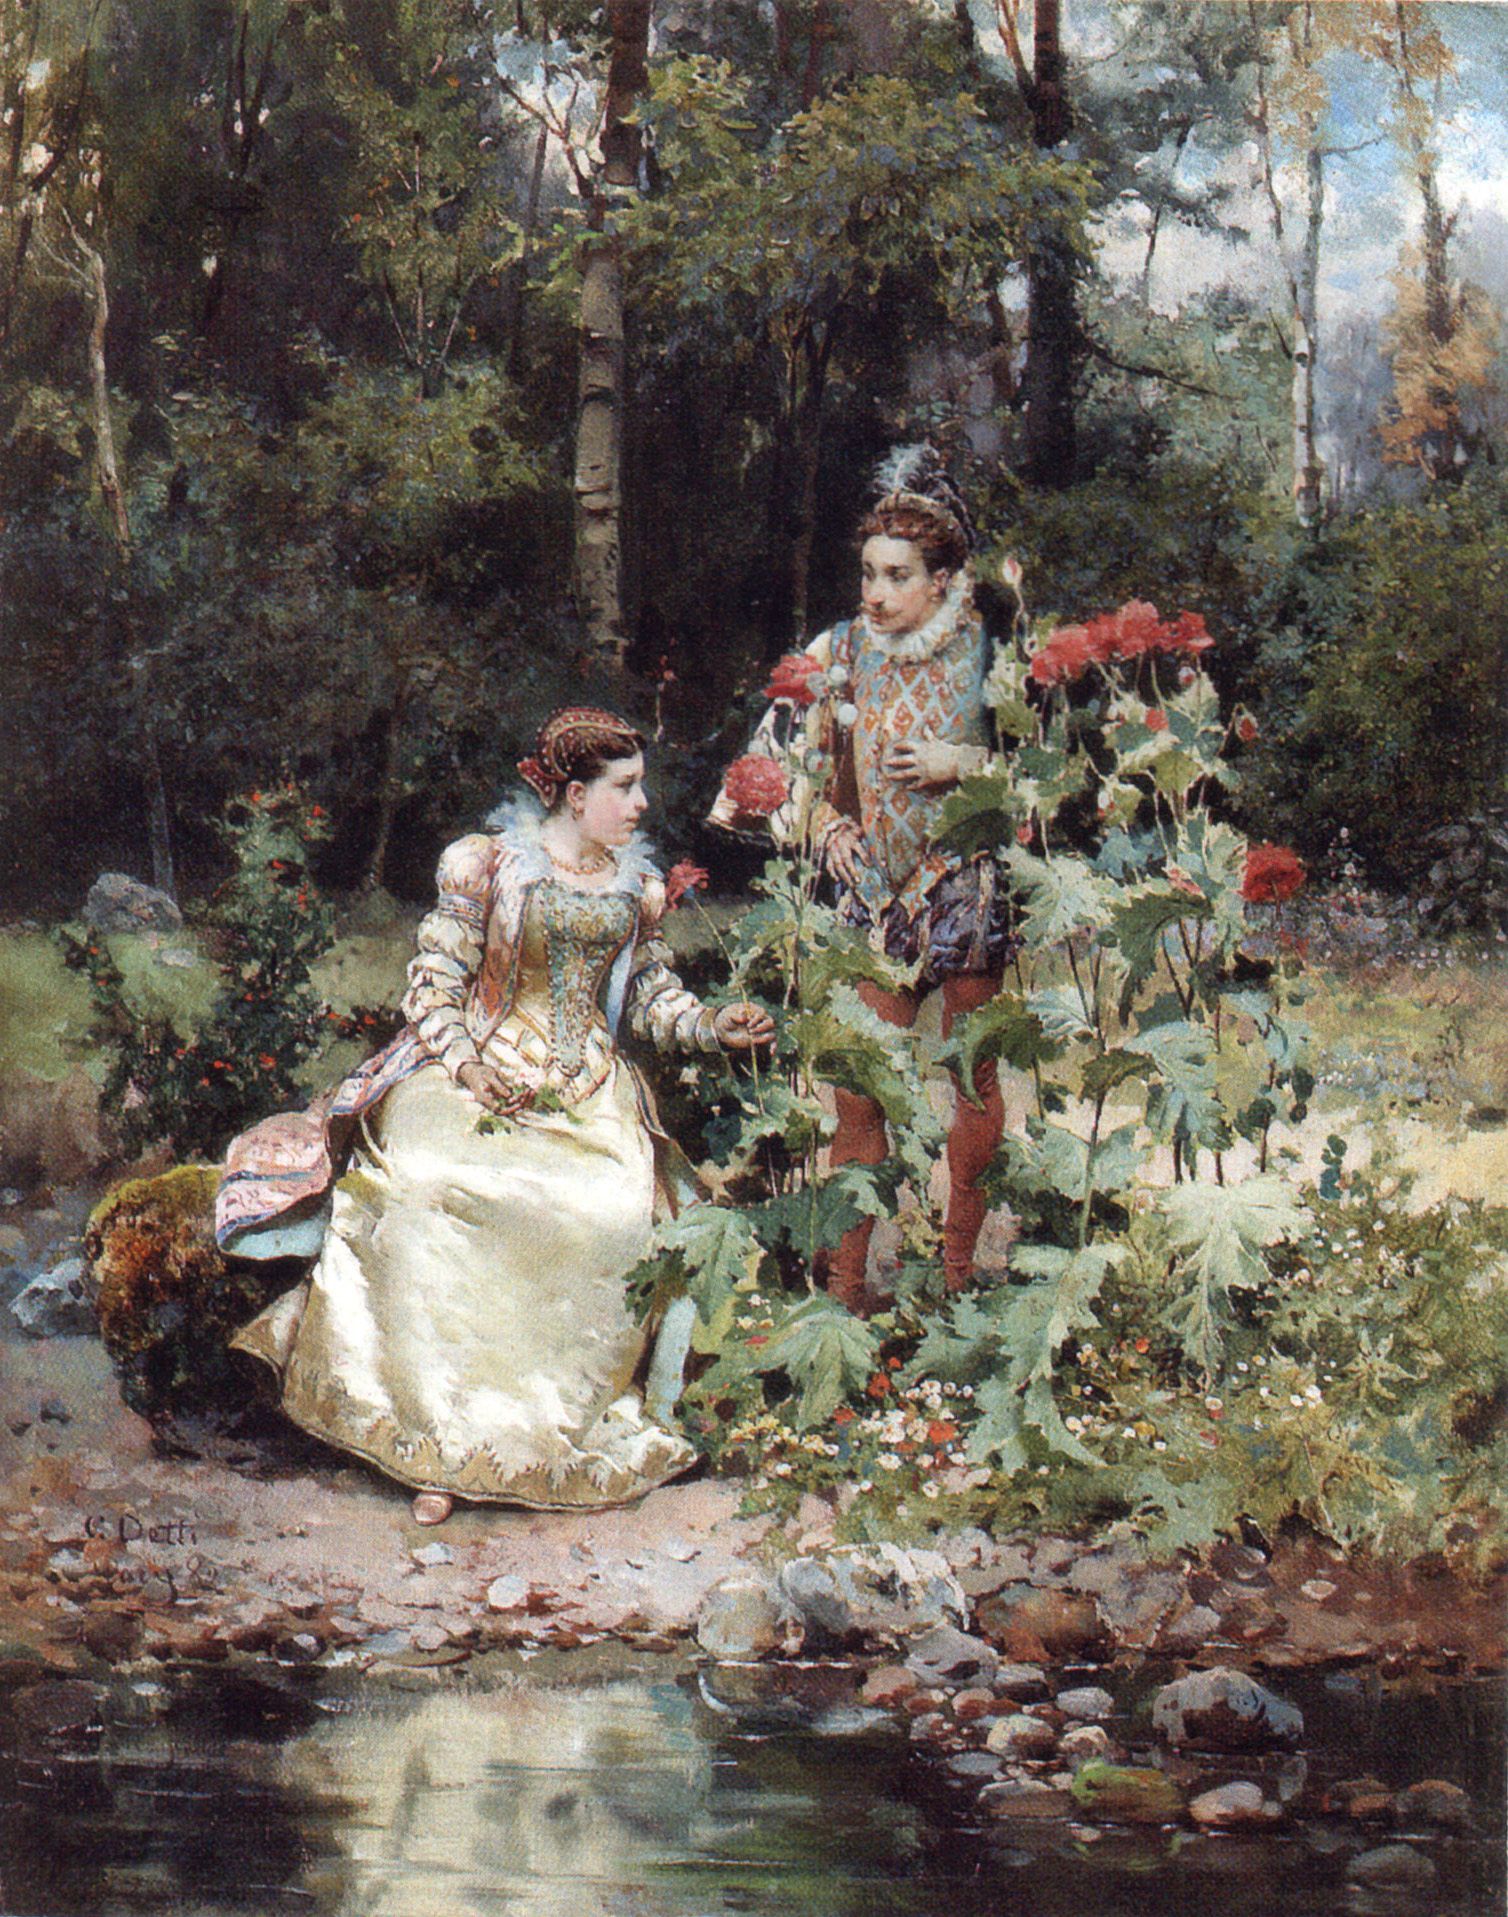 In The Garden by Cesare Detti